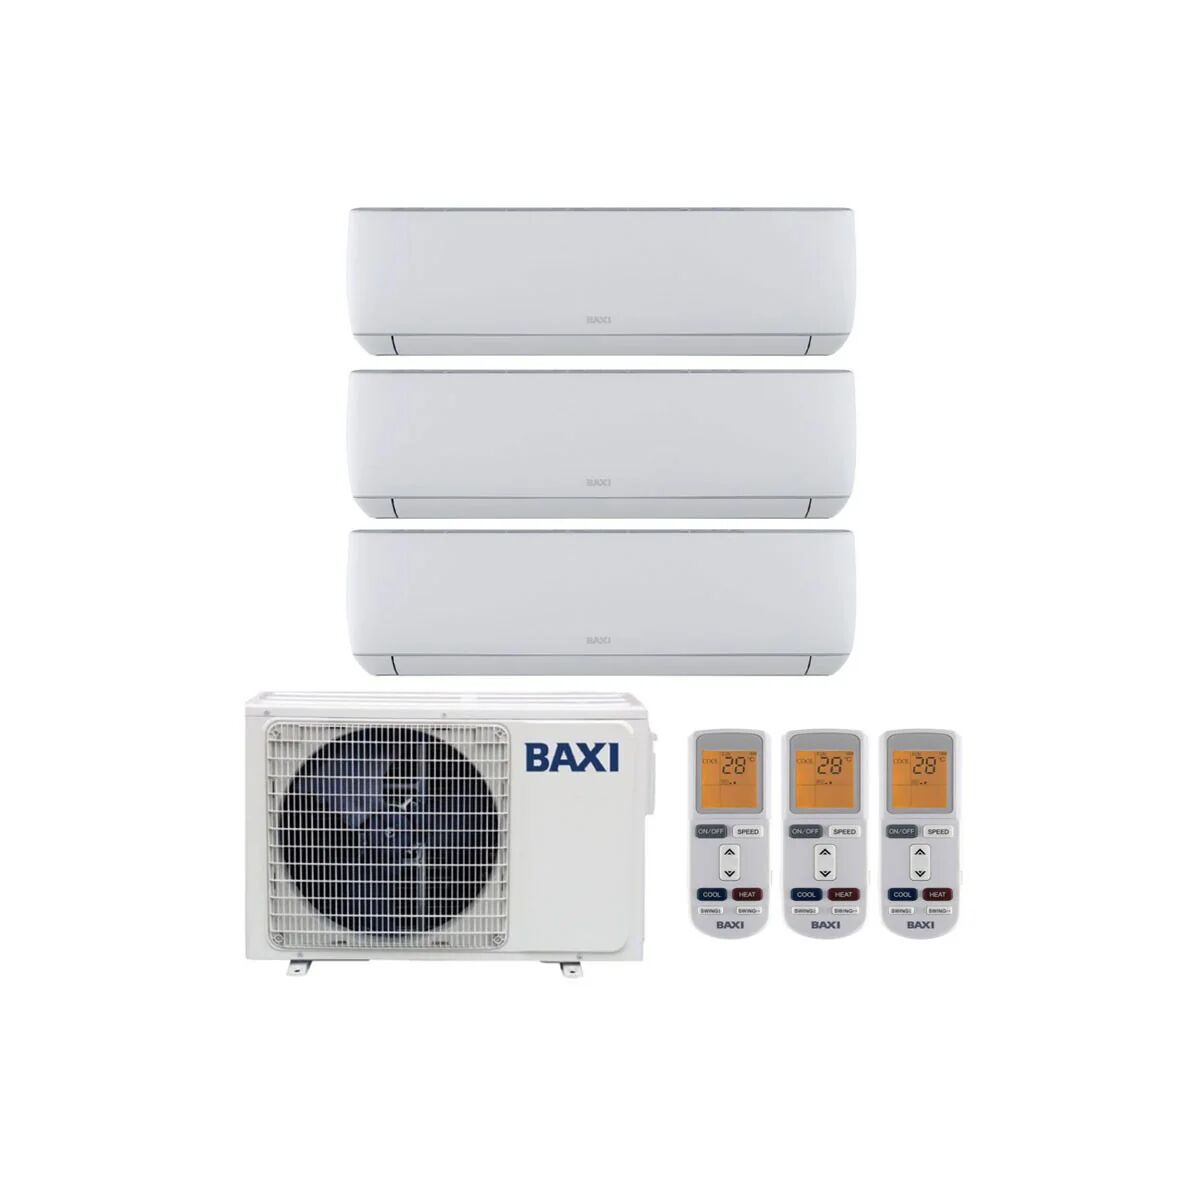 Condizionatore Baxi Astra Trial Split 9000+9000+9000 Btu Inverter R32 Lsgt60-3M A++ (LSGT60-3M 9+9+9)